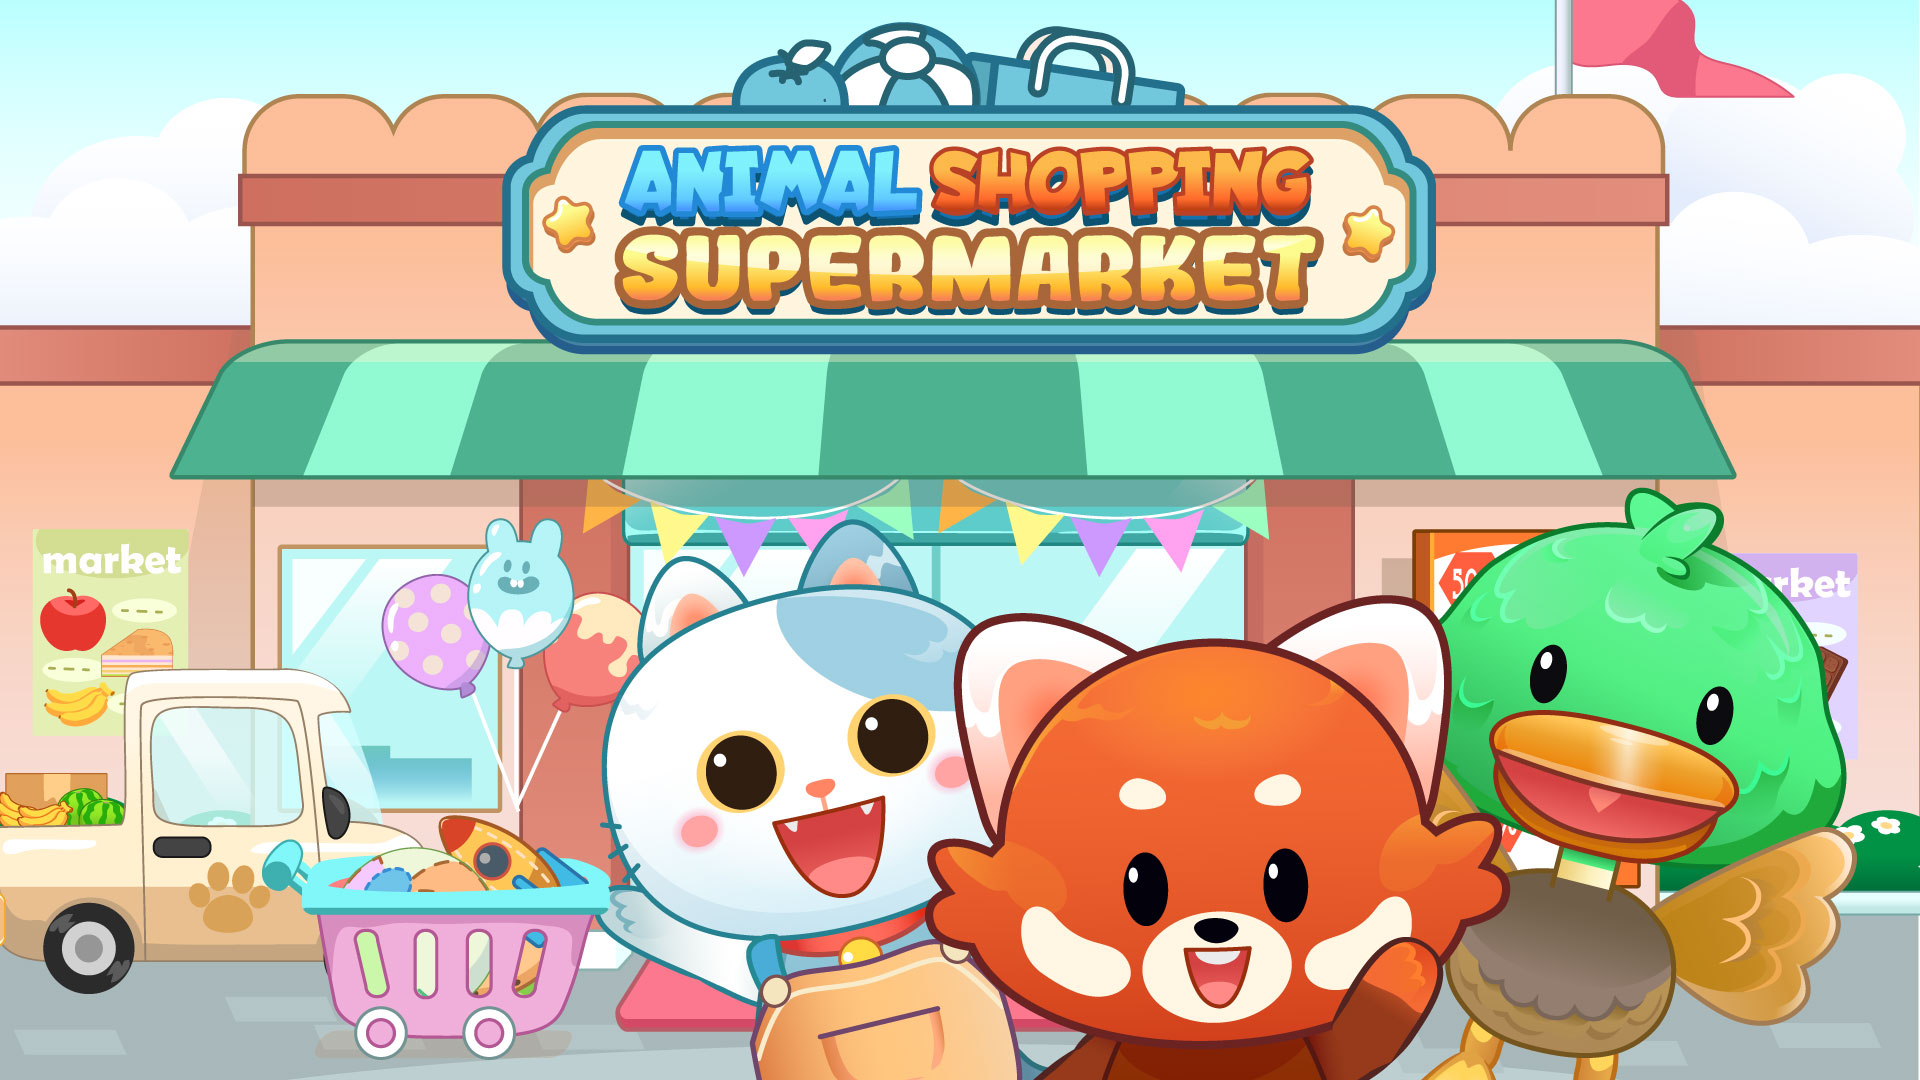 Animal Shopping Supermarket Game Image